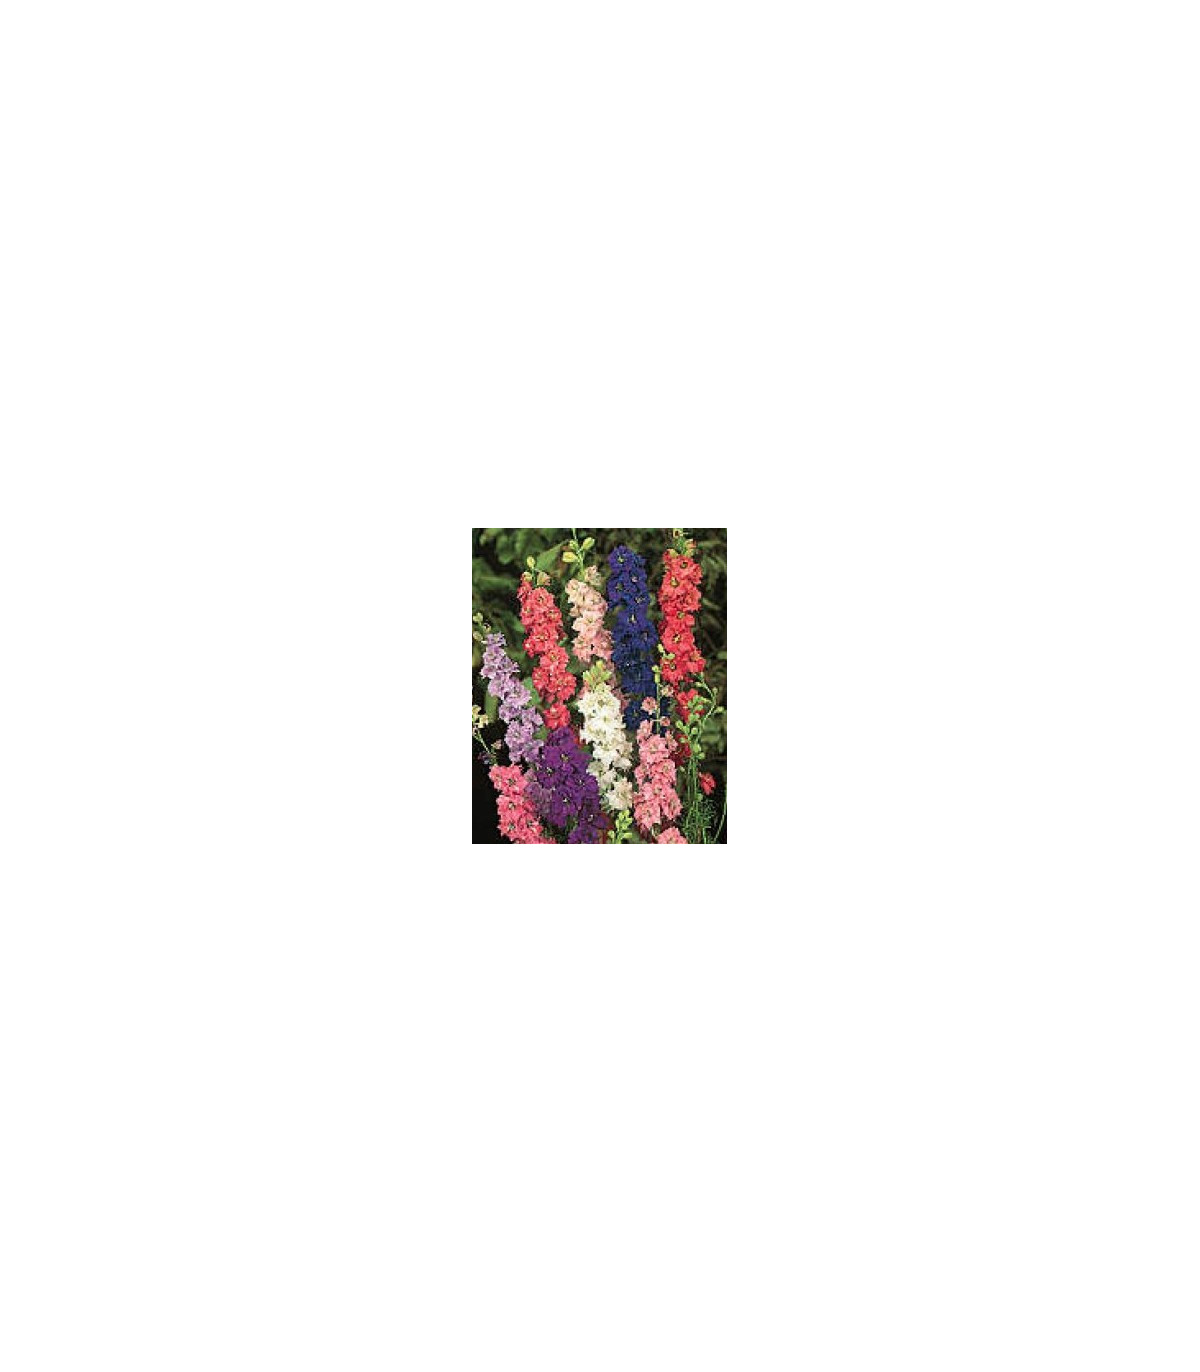 Stračka zahradní hyacintokvětá směs barev - Delphinium ajacis - osivo stračky - 300 ks